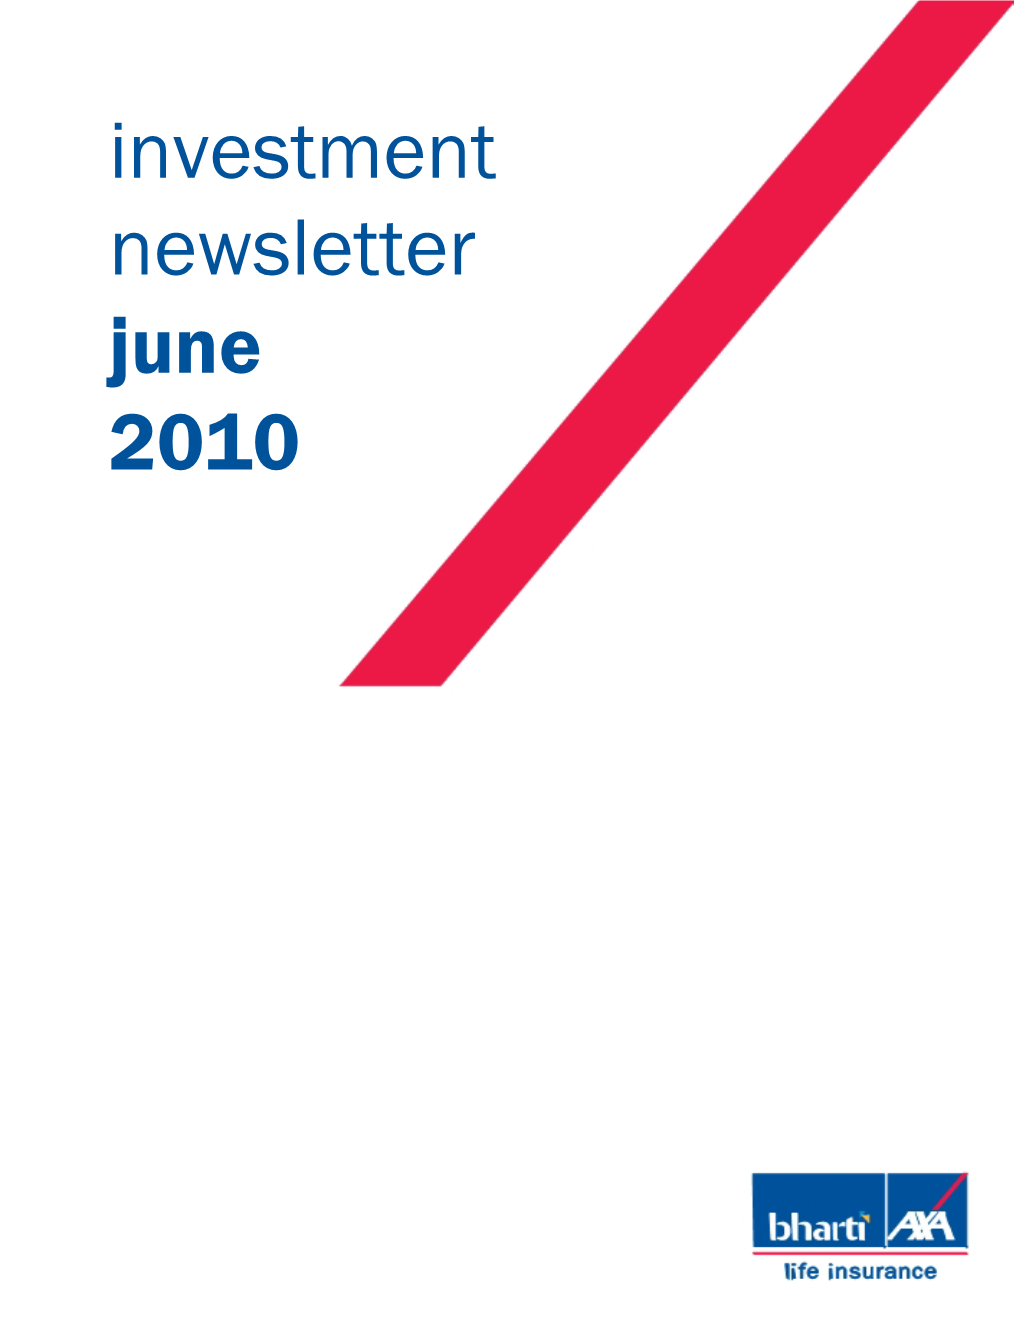 Investment Newsletter June 2010